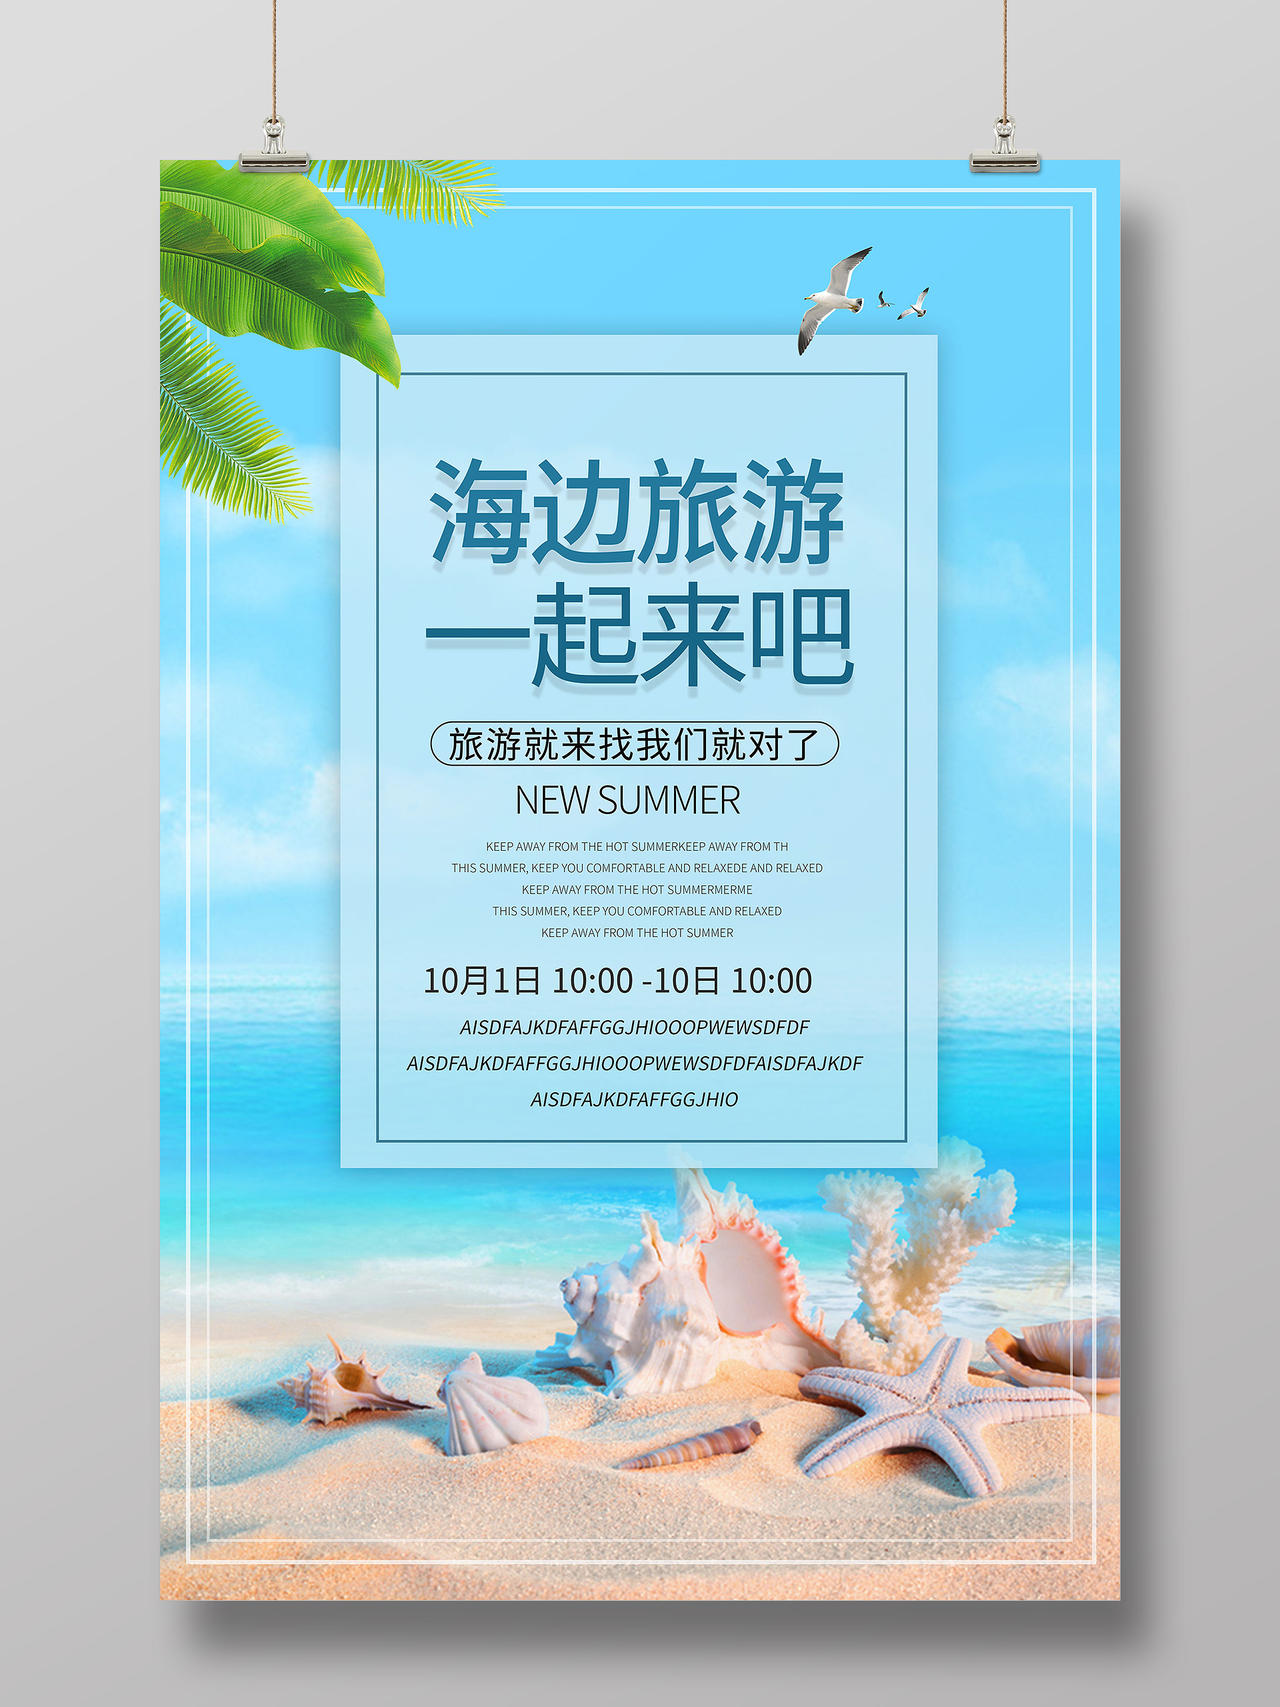 蓝色小清新海边旅游沙滩旅游旅行社宣传海报模板